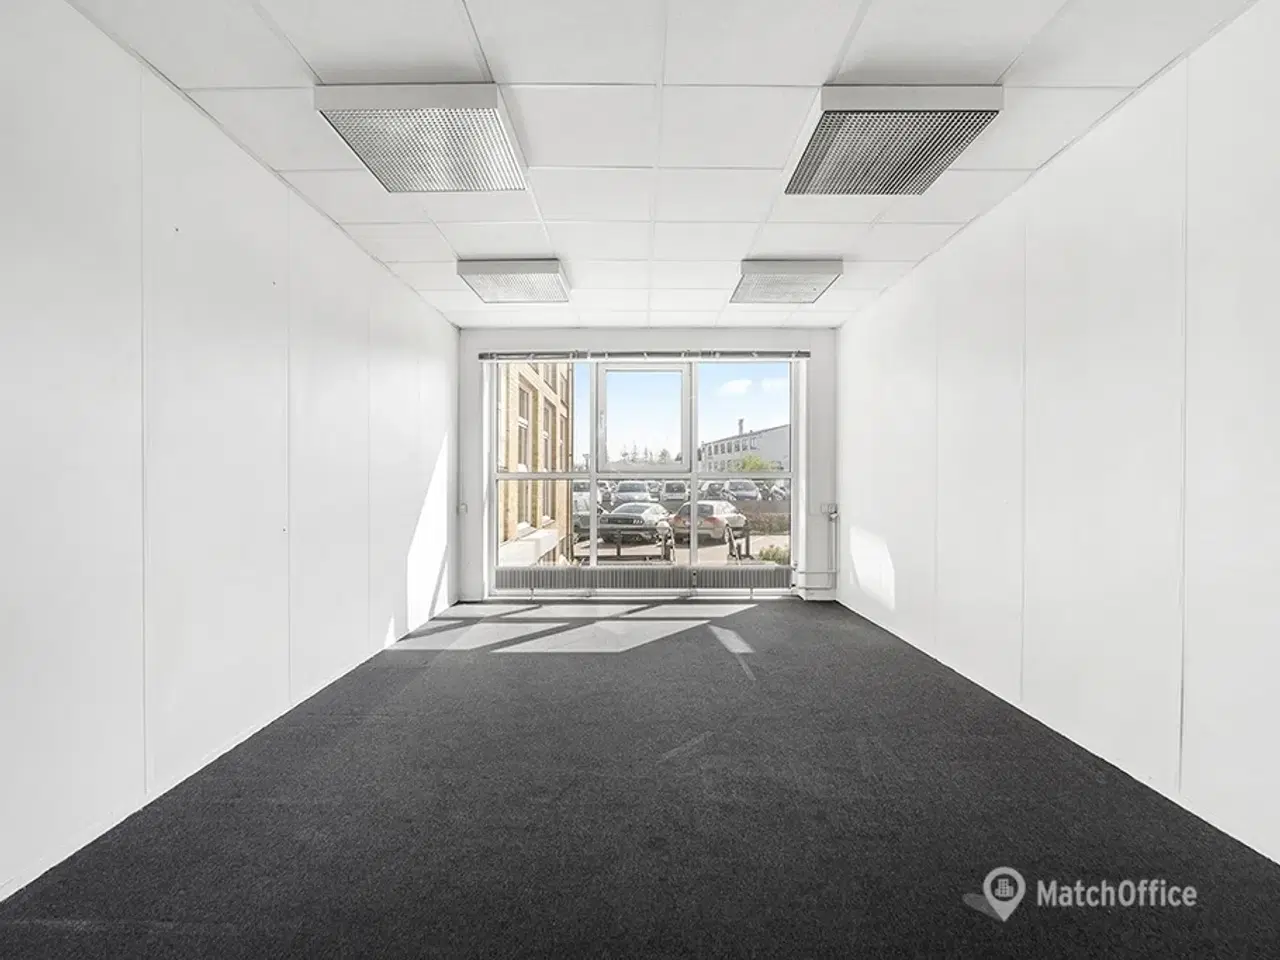 Billede 3 - Velindrettet kontorlejemål med mødelokale på 367 m2 tilbydes i præsentabel ejendom med central placering i Gladsaxe Erhvervsby.